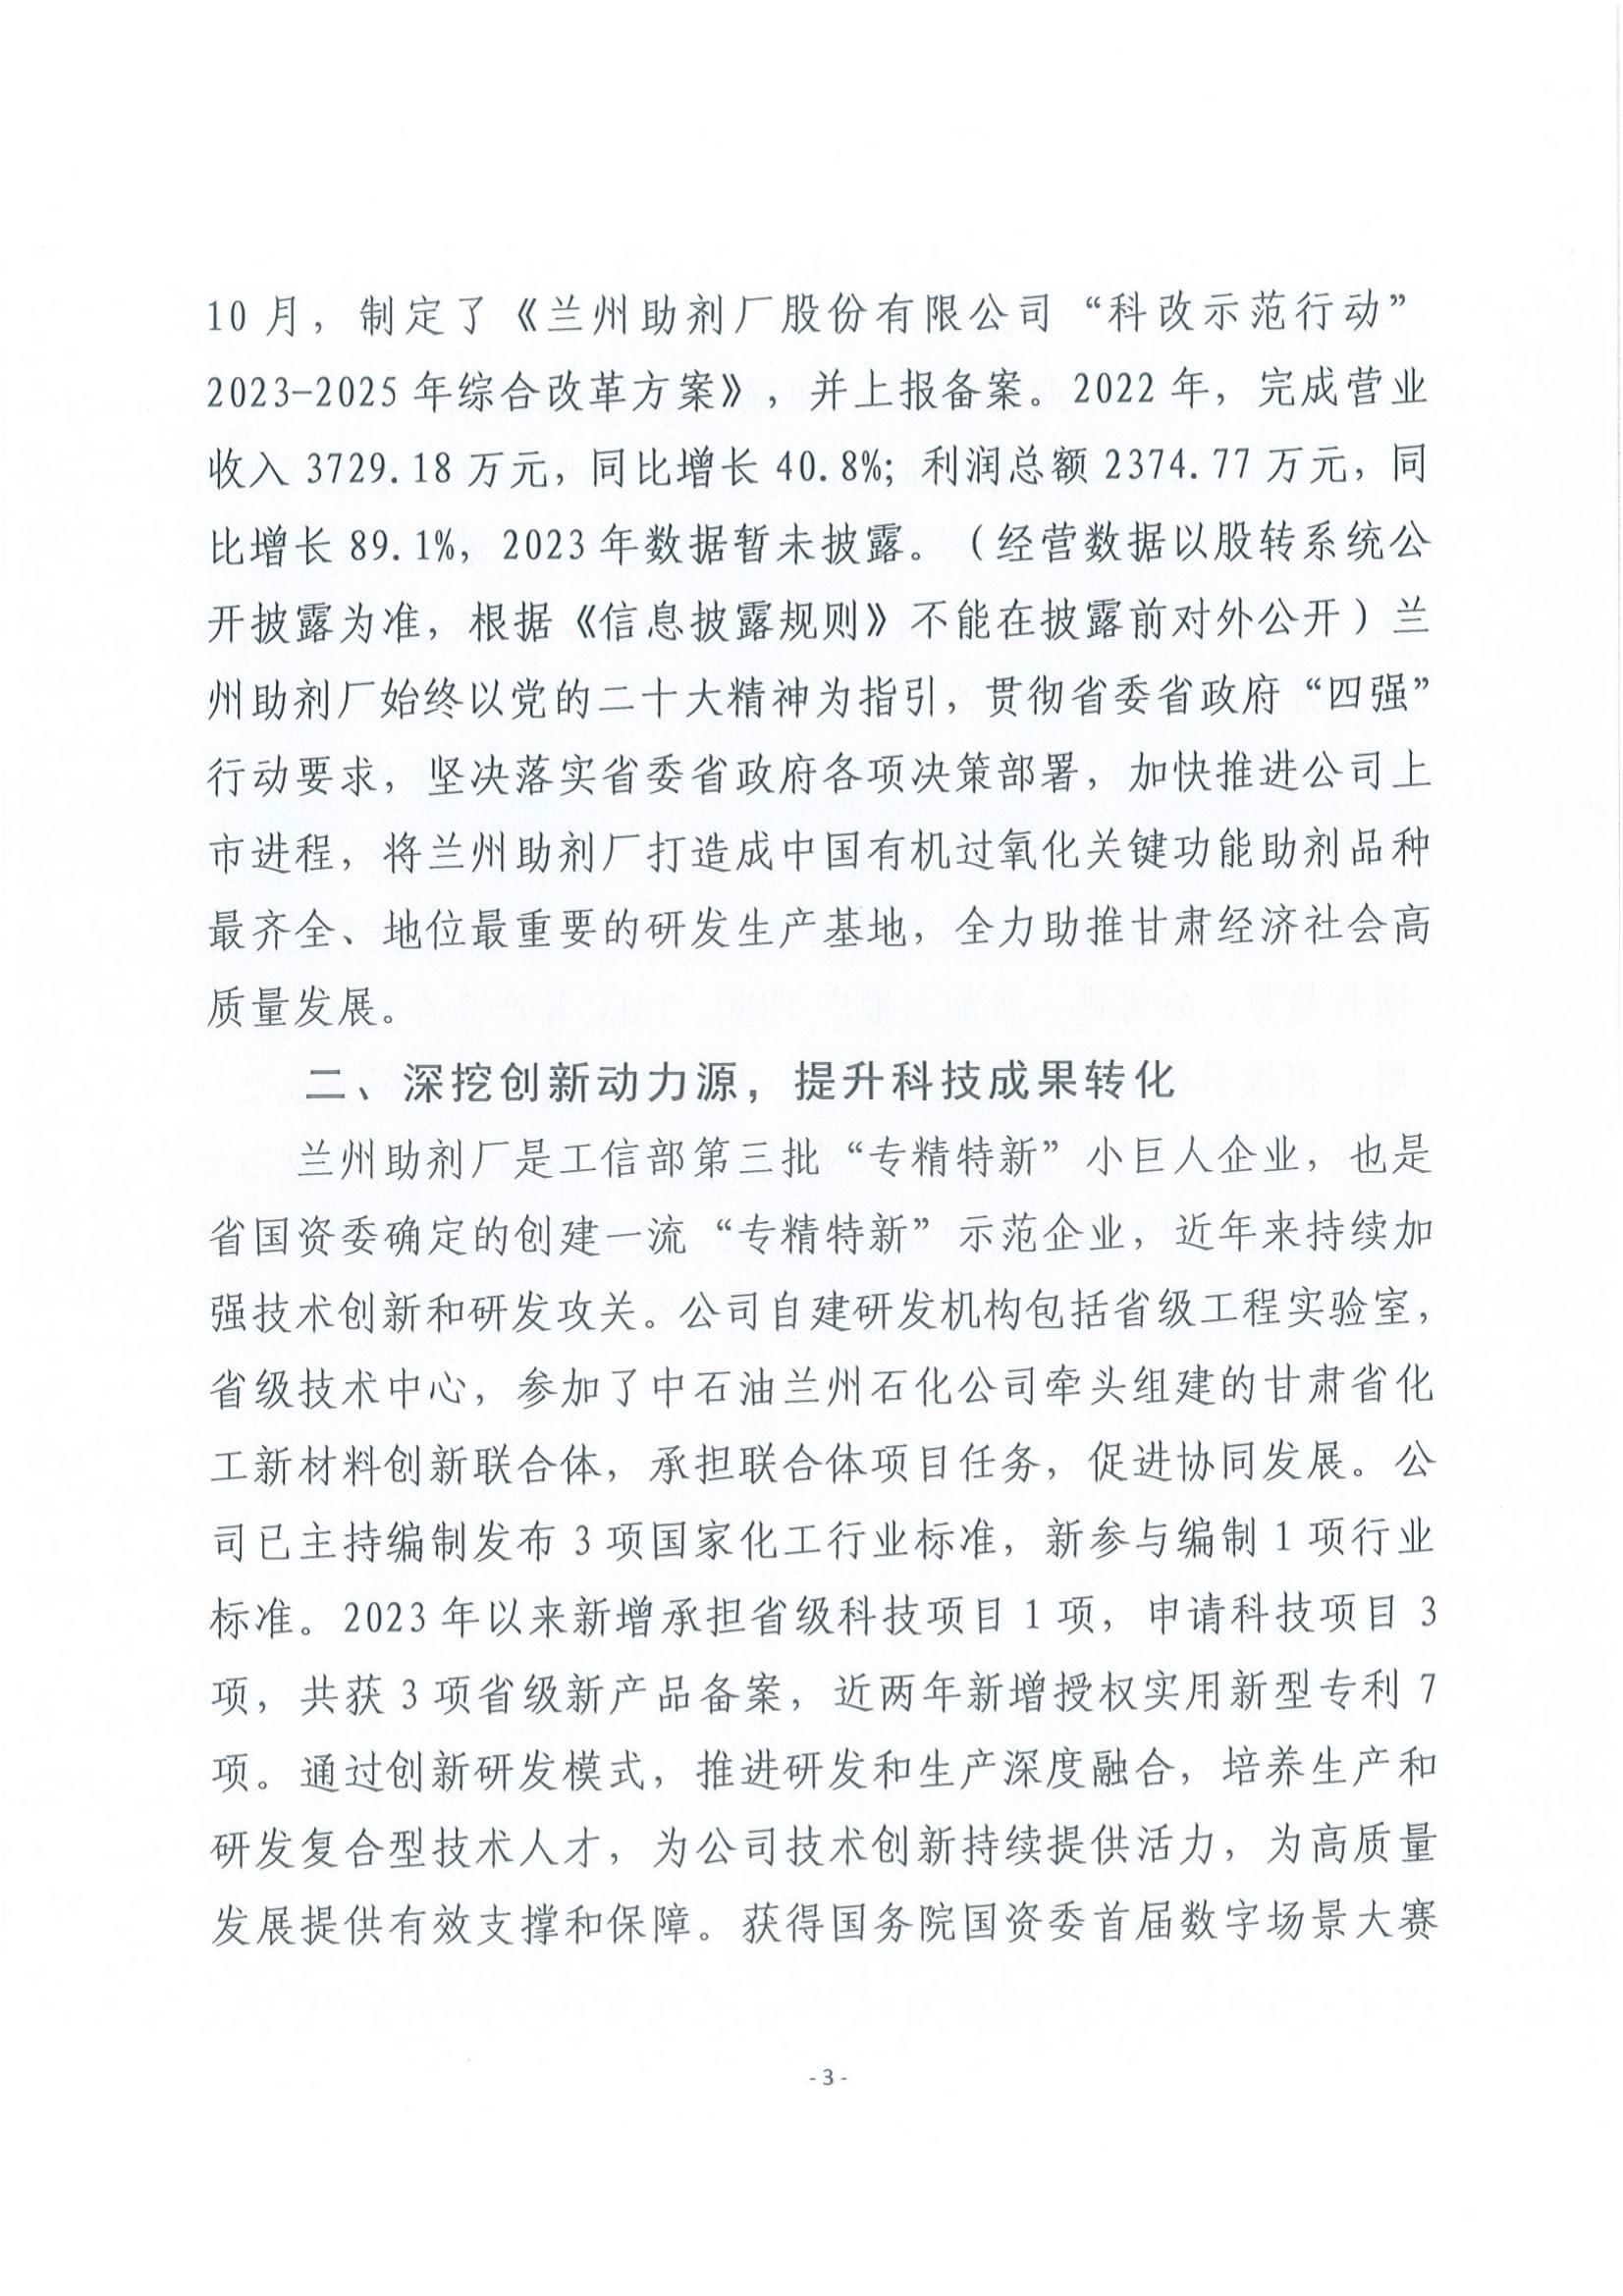 皇冠游戏在线平台工会关于推荐甘肃省五一劳动奖状的公示_02.jpg